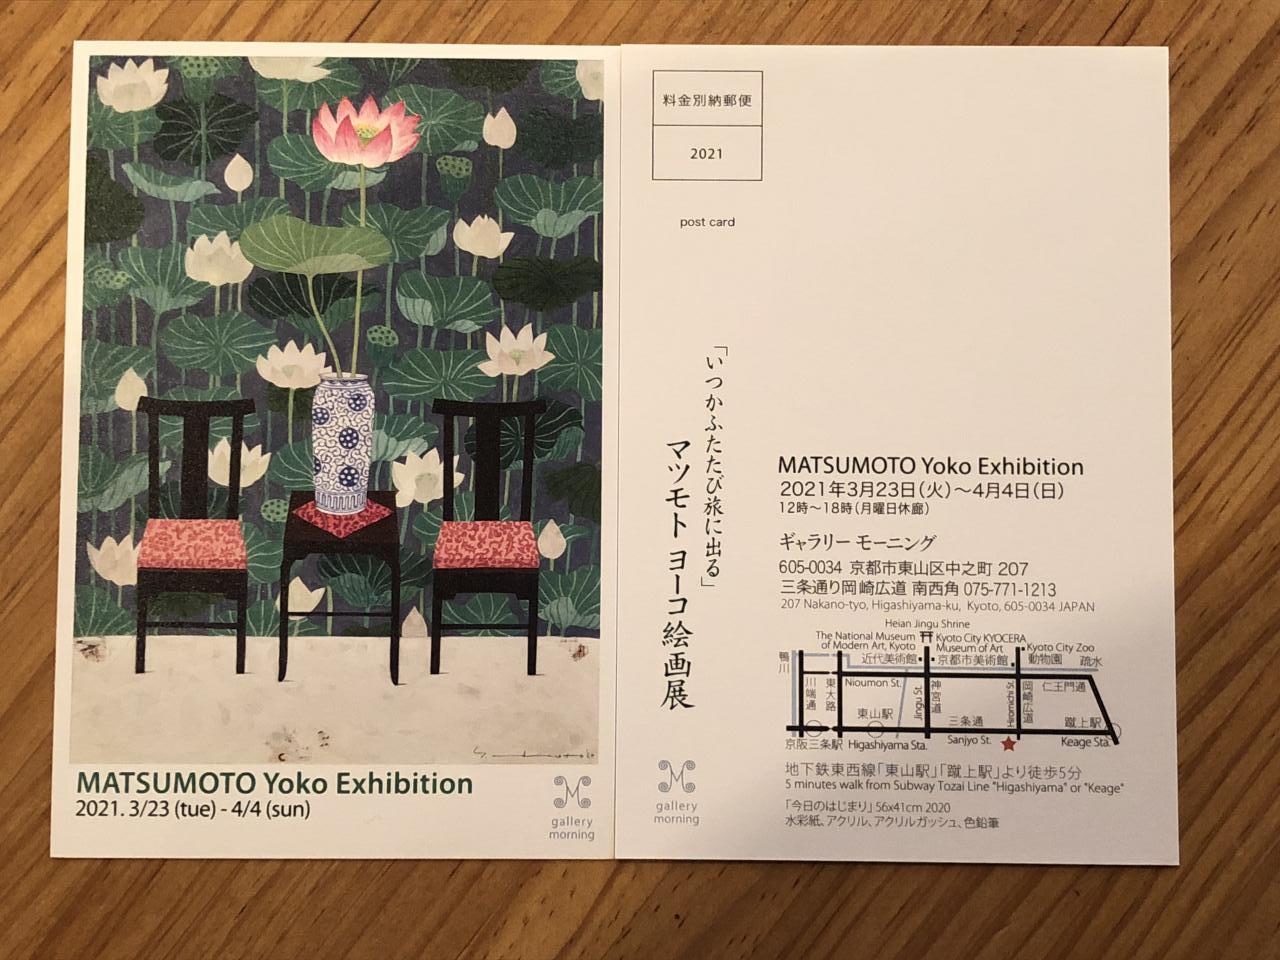 「マツモトヨーコ絵画展」が京都で開催されます。
錦のシェモアのオープンの頃から飾らせて頂いていますマツモトヨーコさんの絵画展です。
2021.3月23日～4月4日まで
「ギャラリーモーニング」京都市東山区三条通白川橋東入
